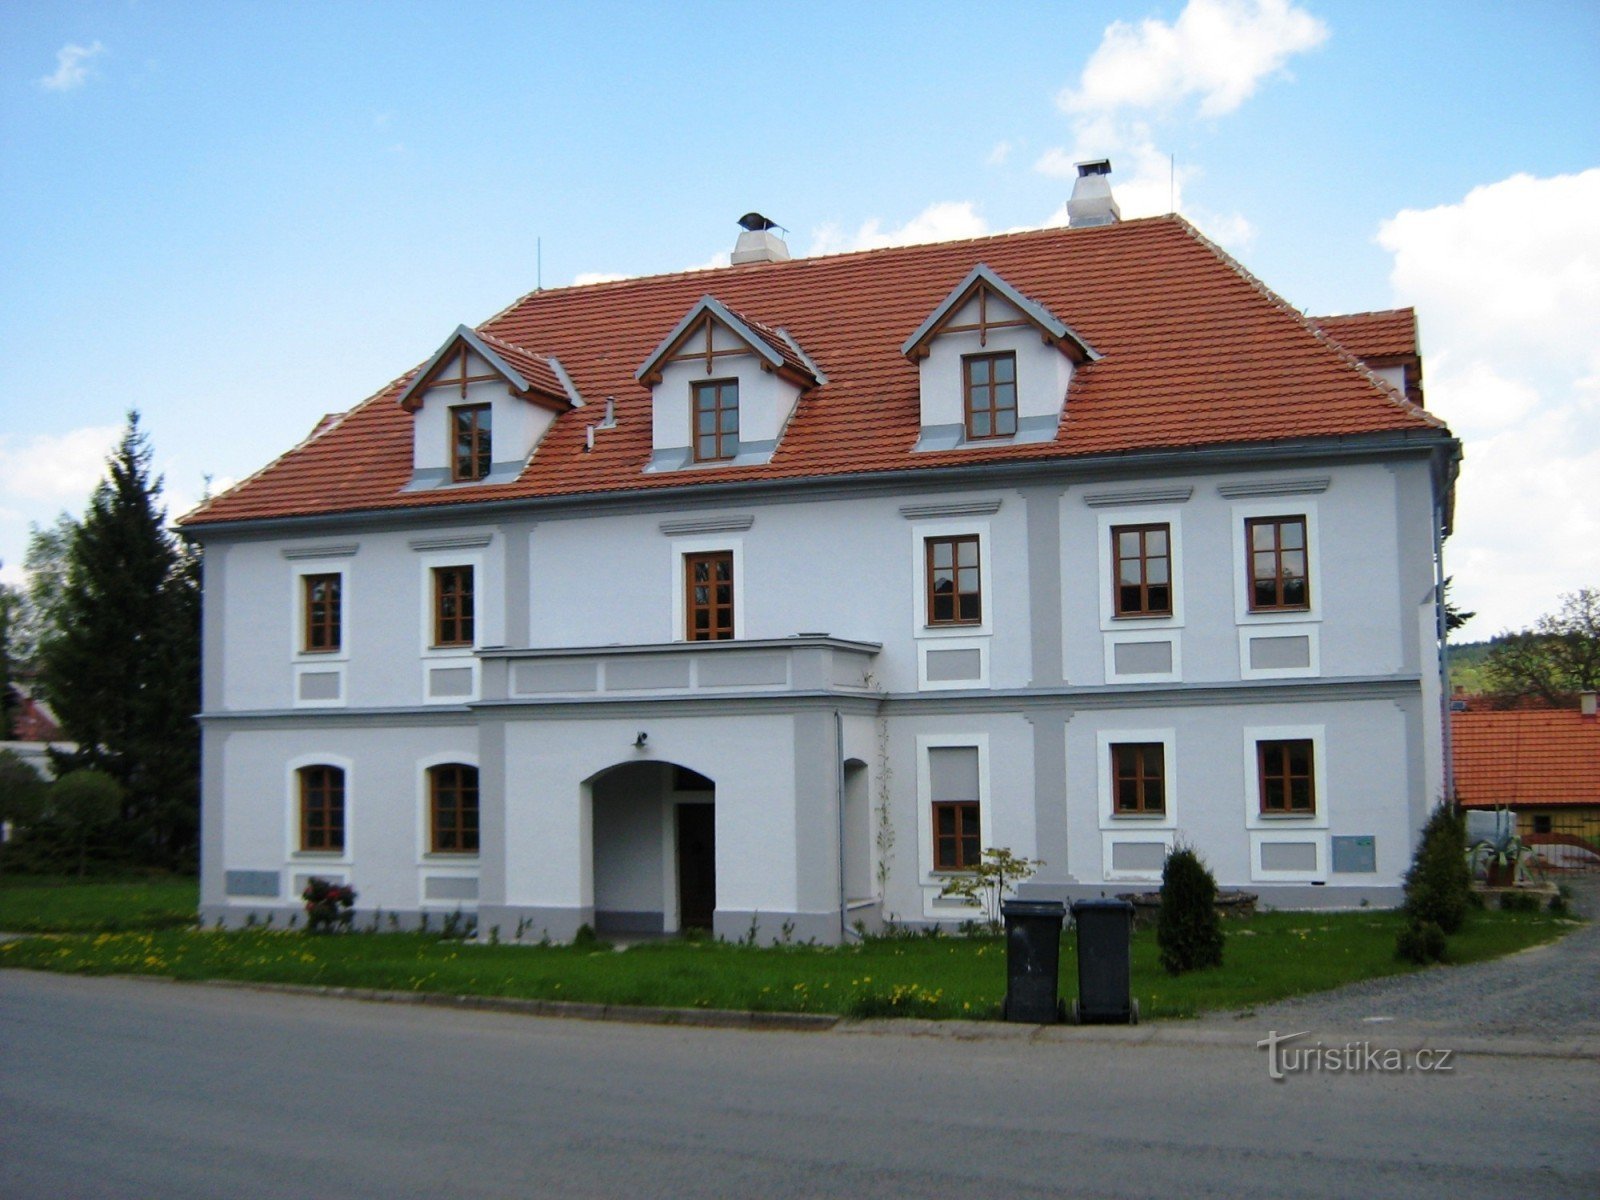 Maison thermale dans le village près de Volfů